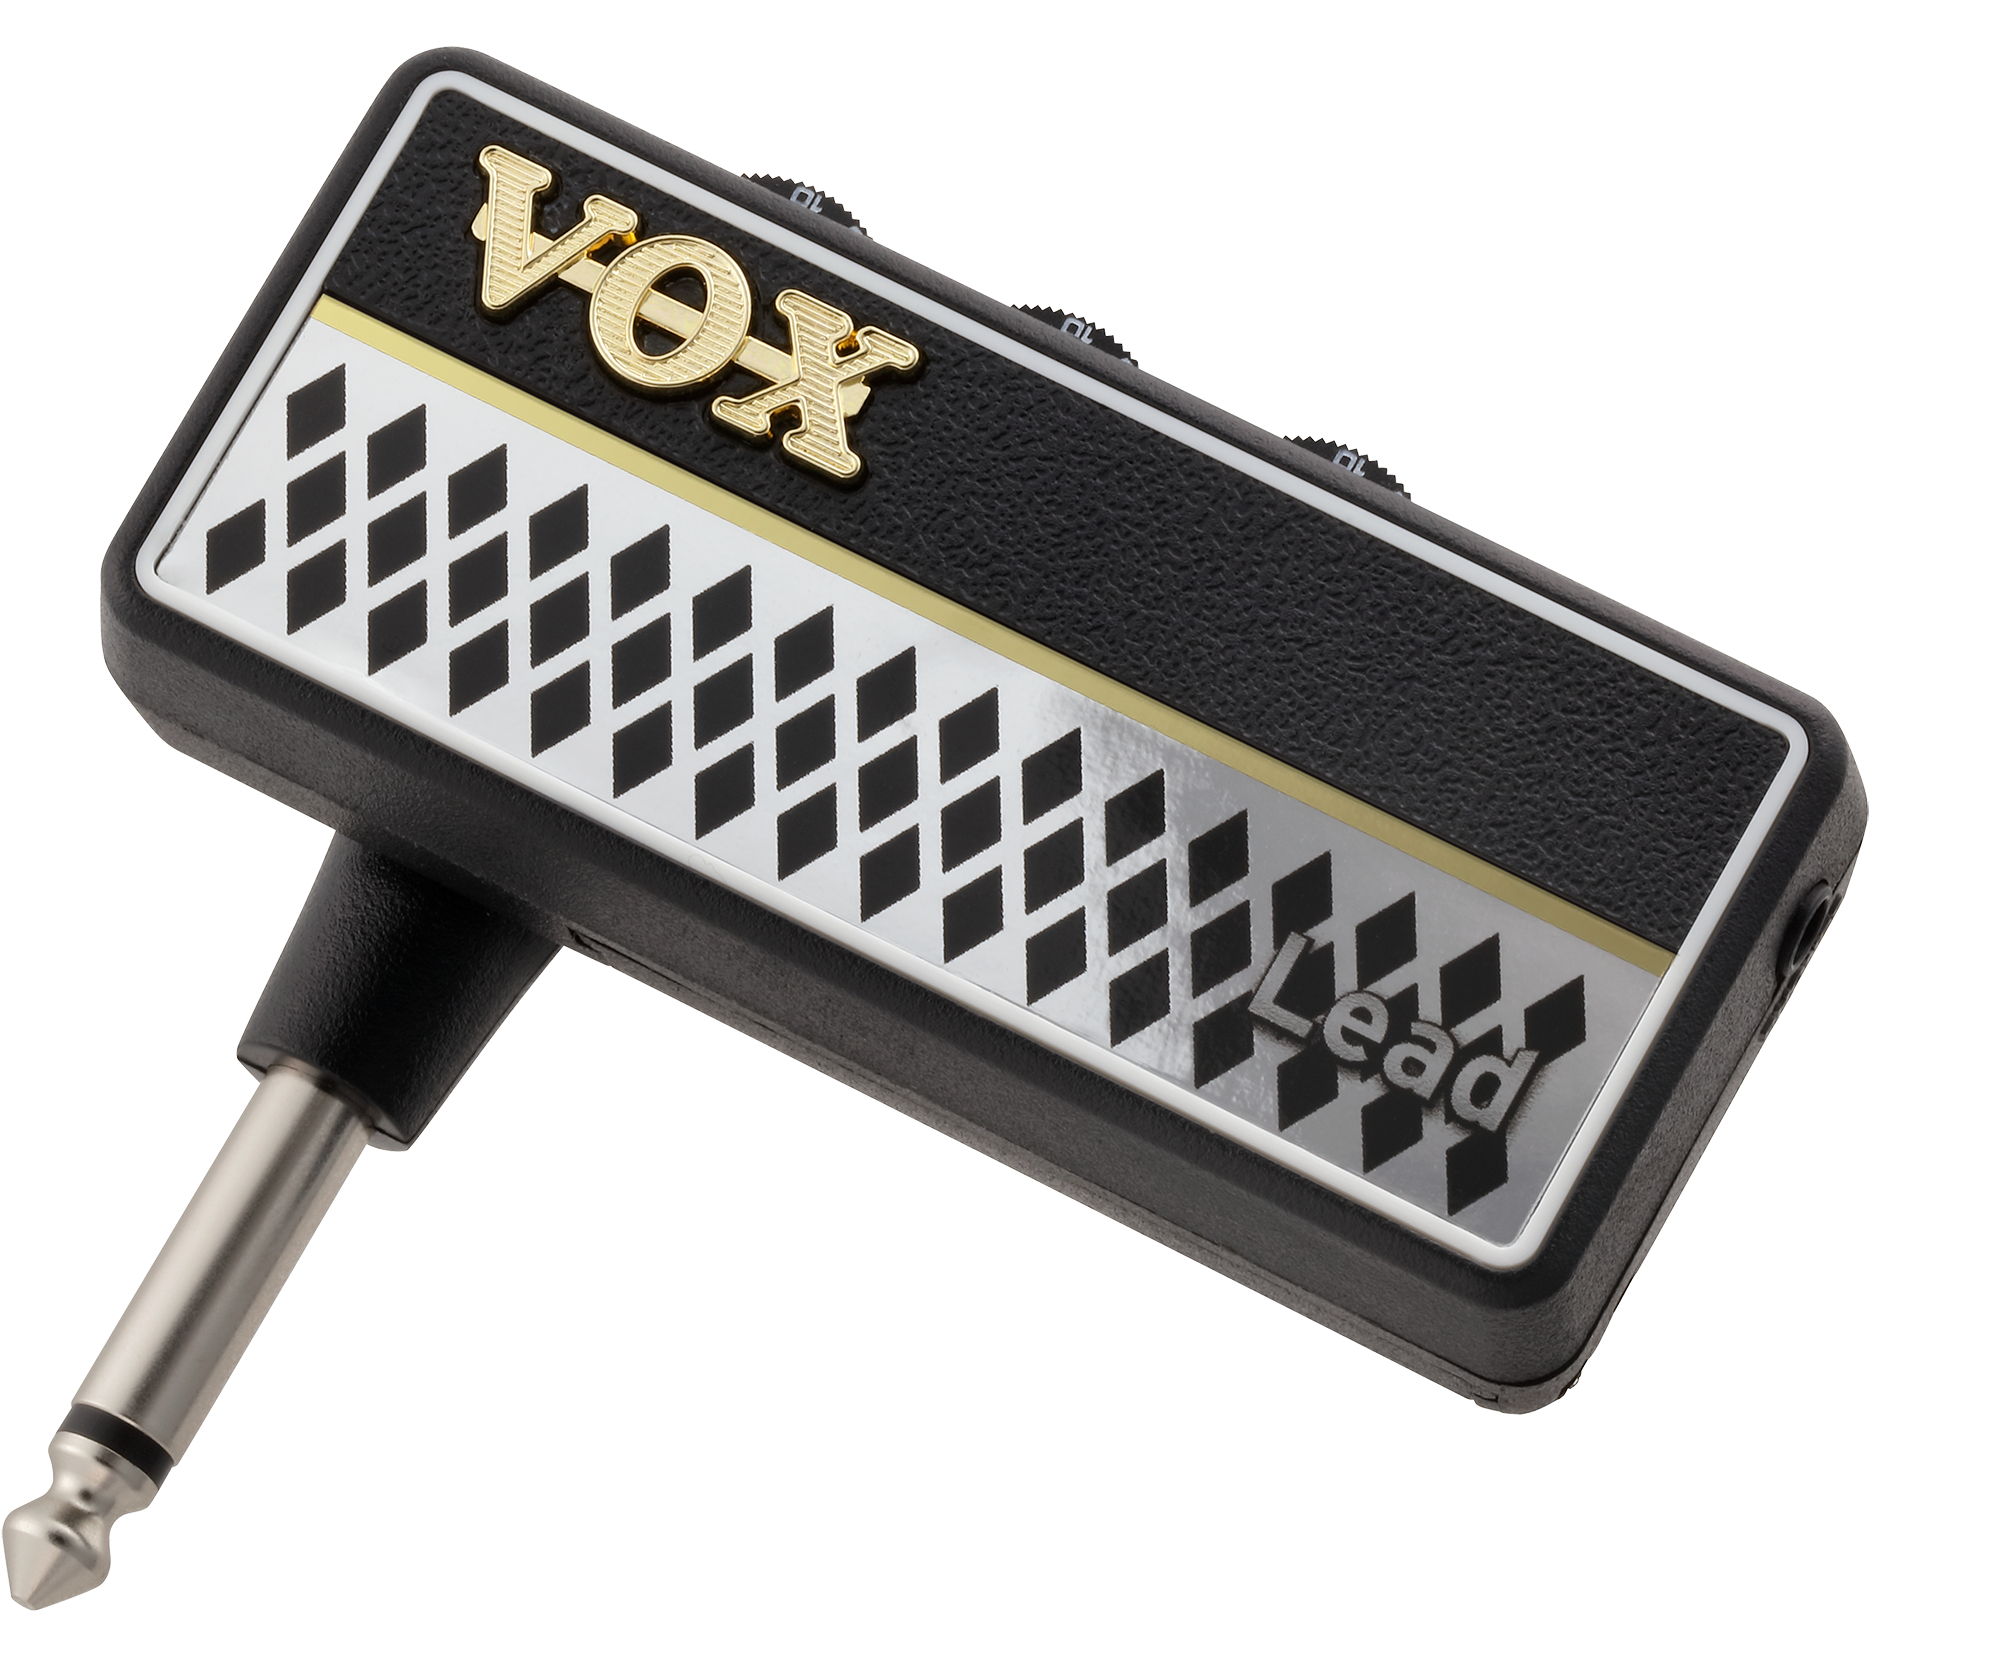 Vox Amplug2 Lead